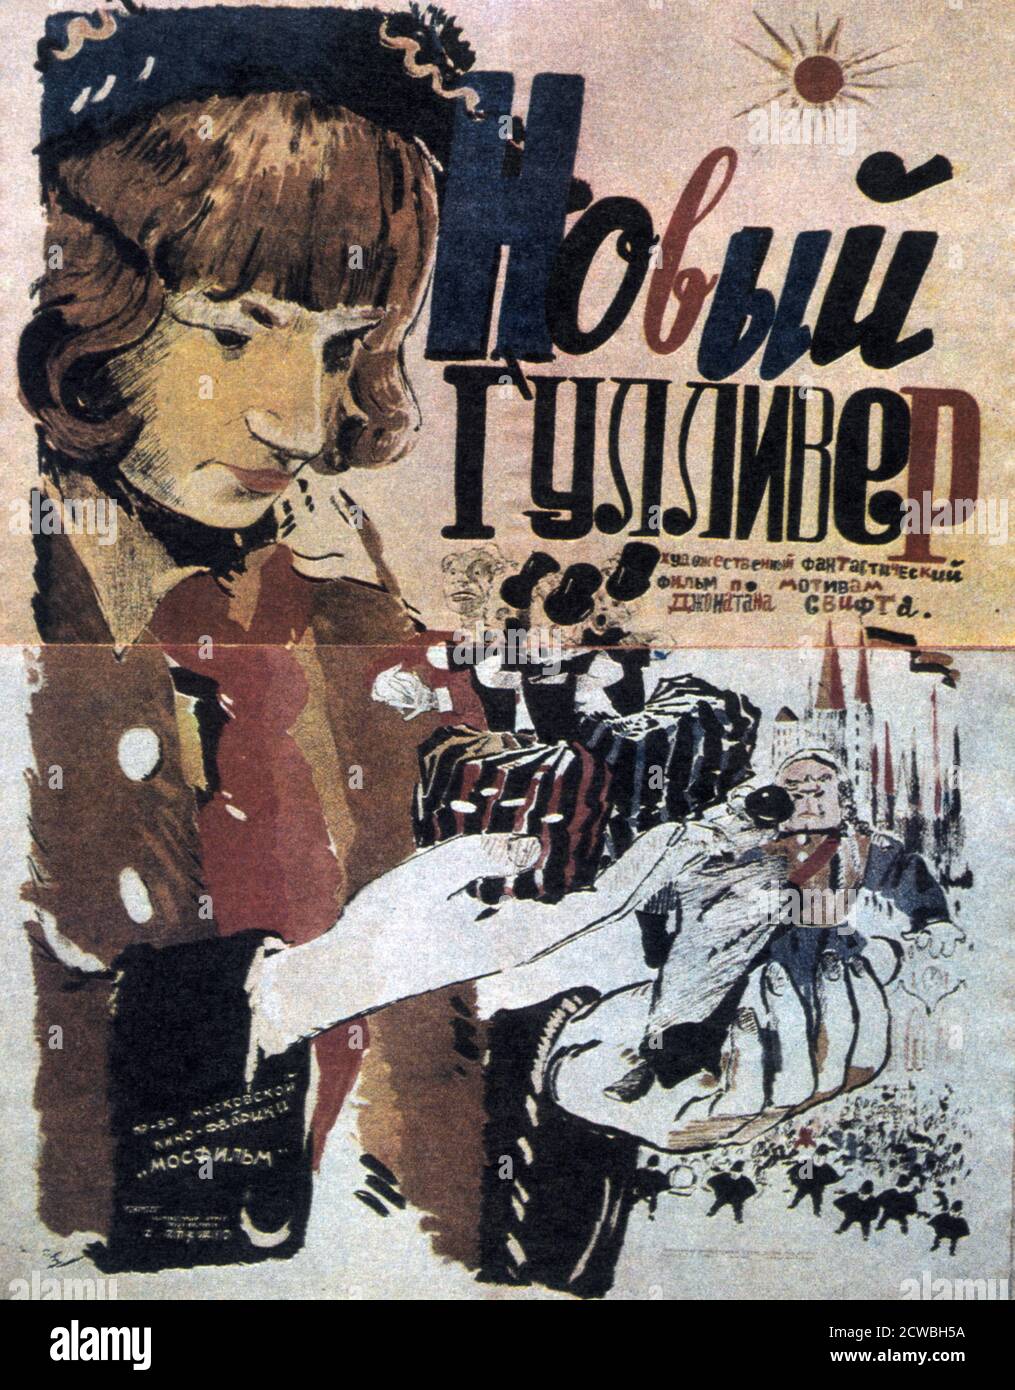 Affiche pour le film 'The New Gulliver' (Novyy Gullivyer), un arrêt soviétique de mouvement animé de dessin animé, et le premier à faire un usage si étendu de l'animation de marionnettes, en courant presque tout le chemin à travers le film. Le film a été sorti en 1935 et a gagné le réalisateur Aleksandr Ptushko un prix spécial au Festival International du Cinéma de Milan. L'histoire, une renarration communiste des voyages de Gulliver, concerne un jeune garçon qui rêve de lui-même en tant que version de Gulliver qui a atterri à Lilliput souffrant de l'inégalité et de l'exploitation capitalistes. Banque D'Images